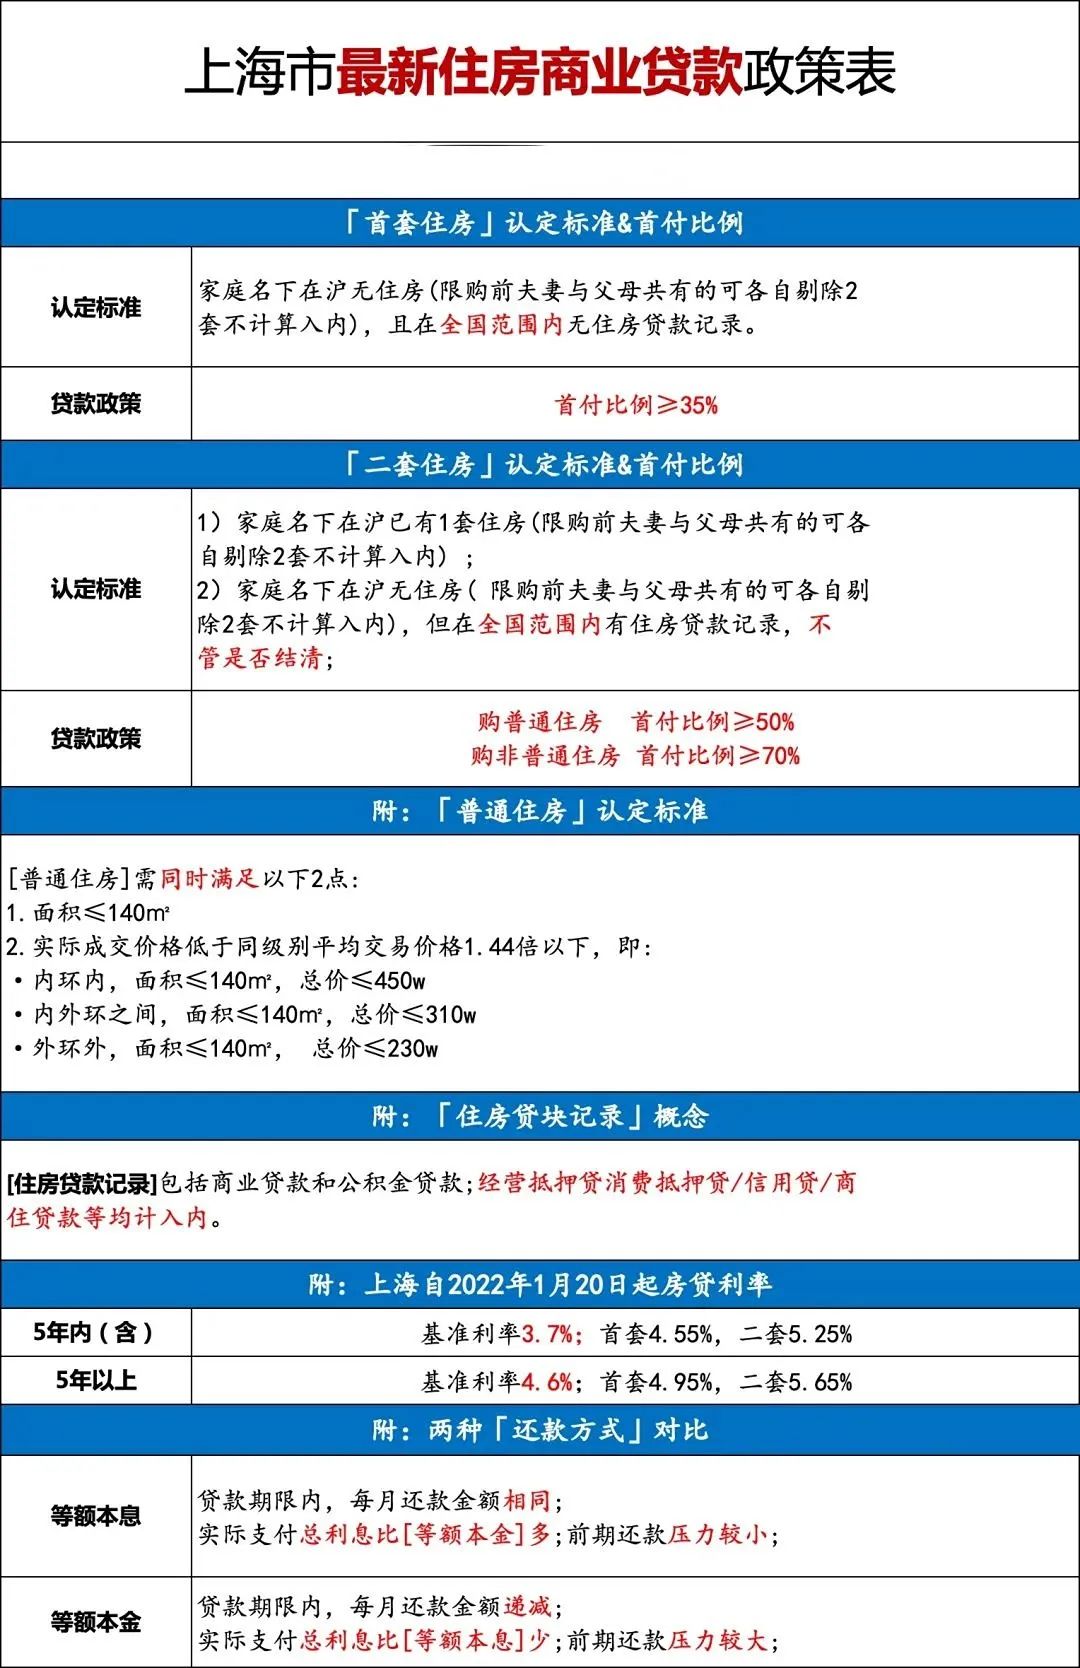 上海落户单身买房政策你知道多少?